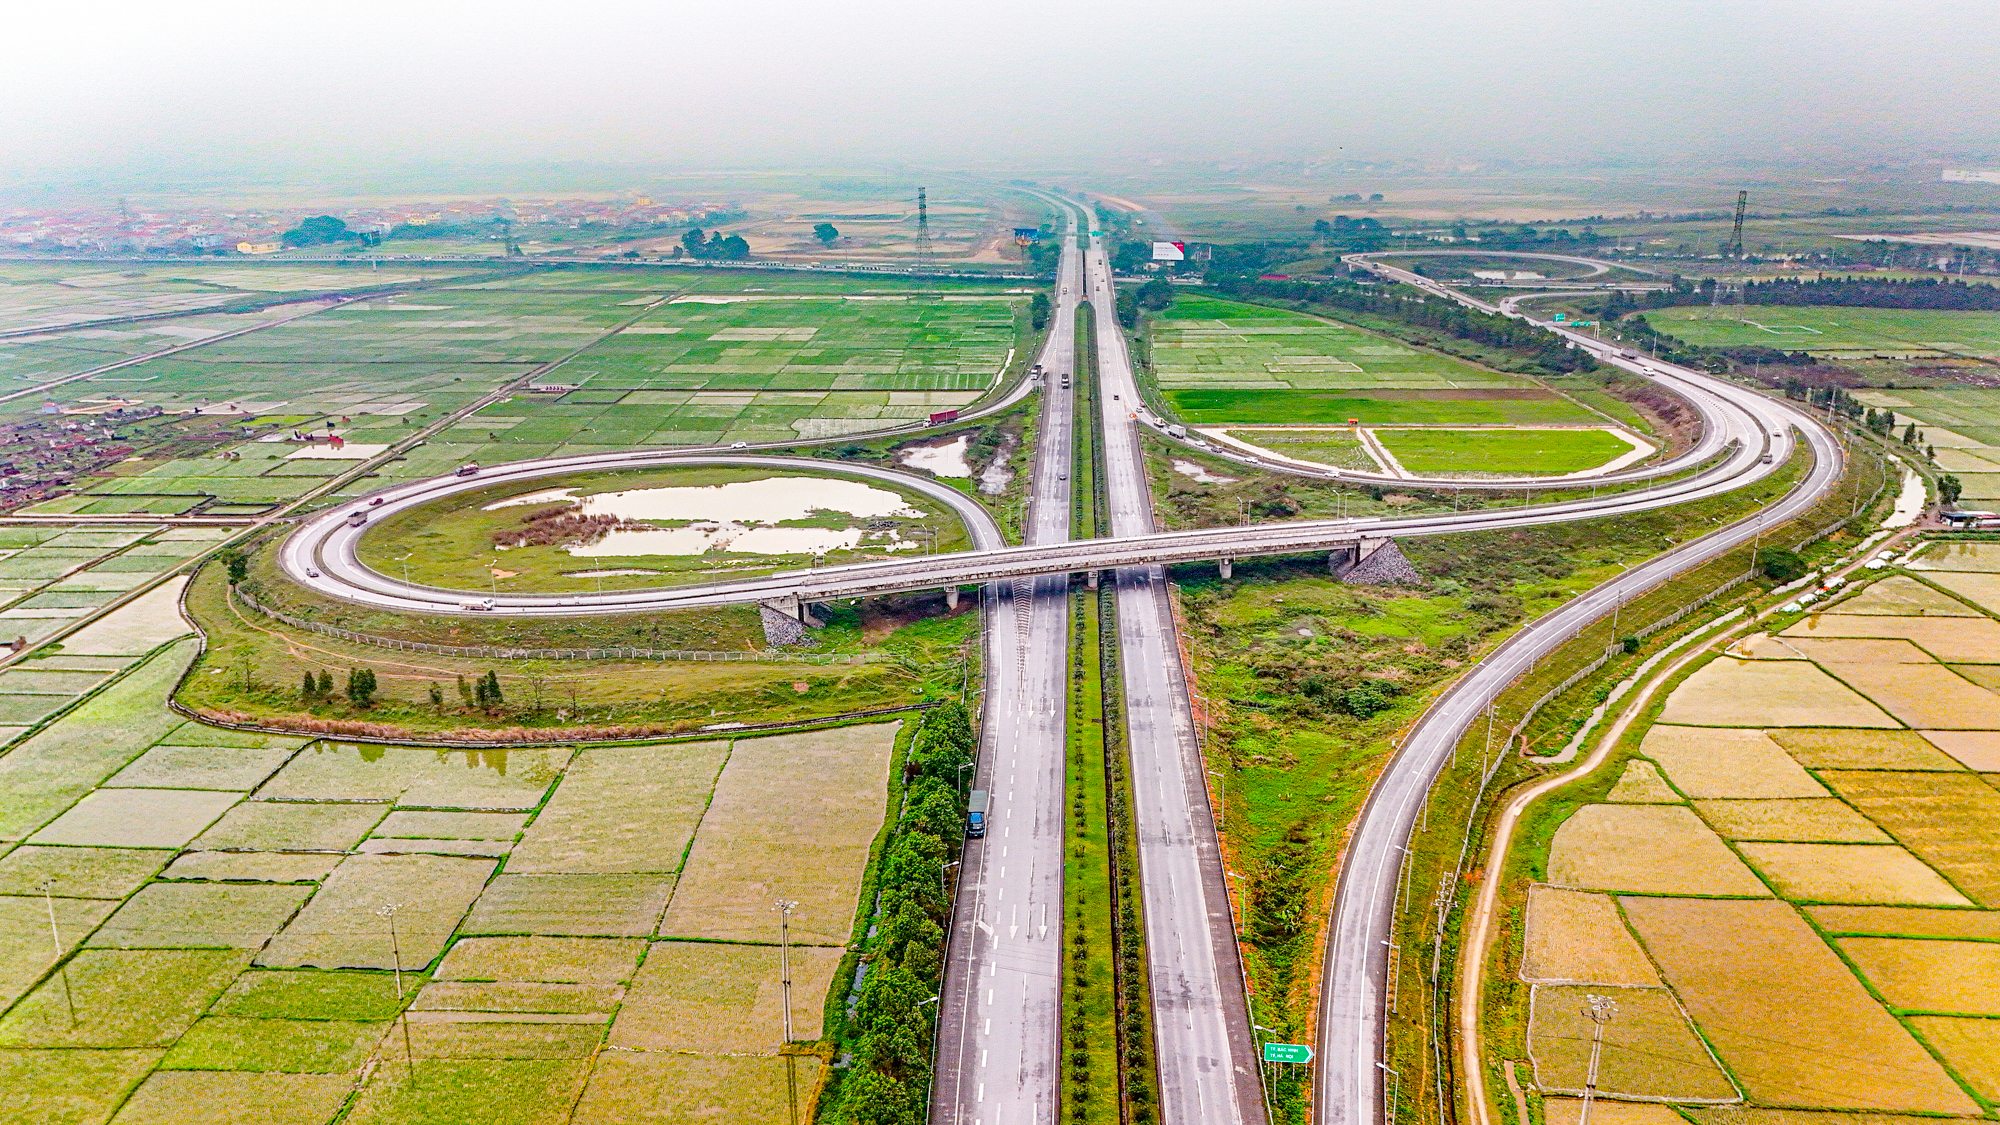 Cao tốc từng dài nhất Việt Nam, tổng mức đầu tư 10.000 tỷ nhưng không thu phí- Ảnh 5.